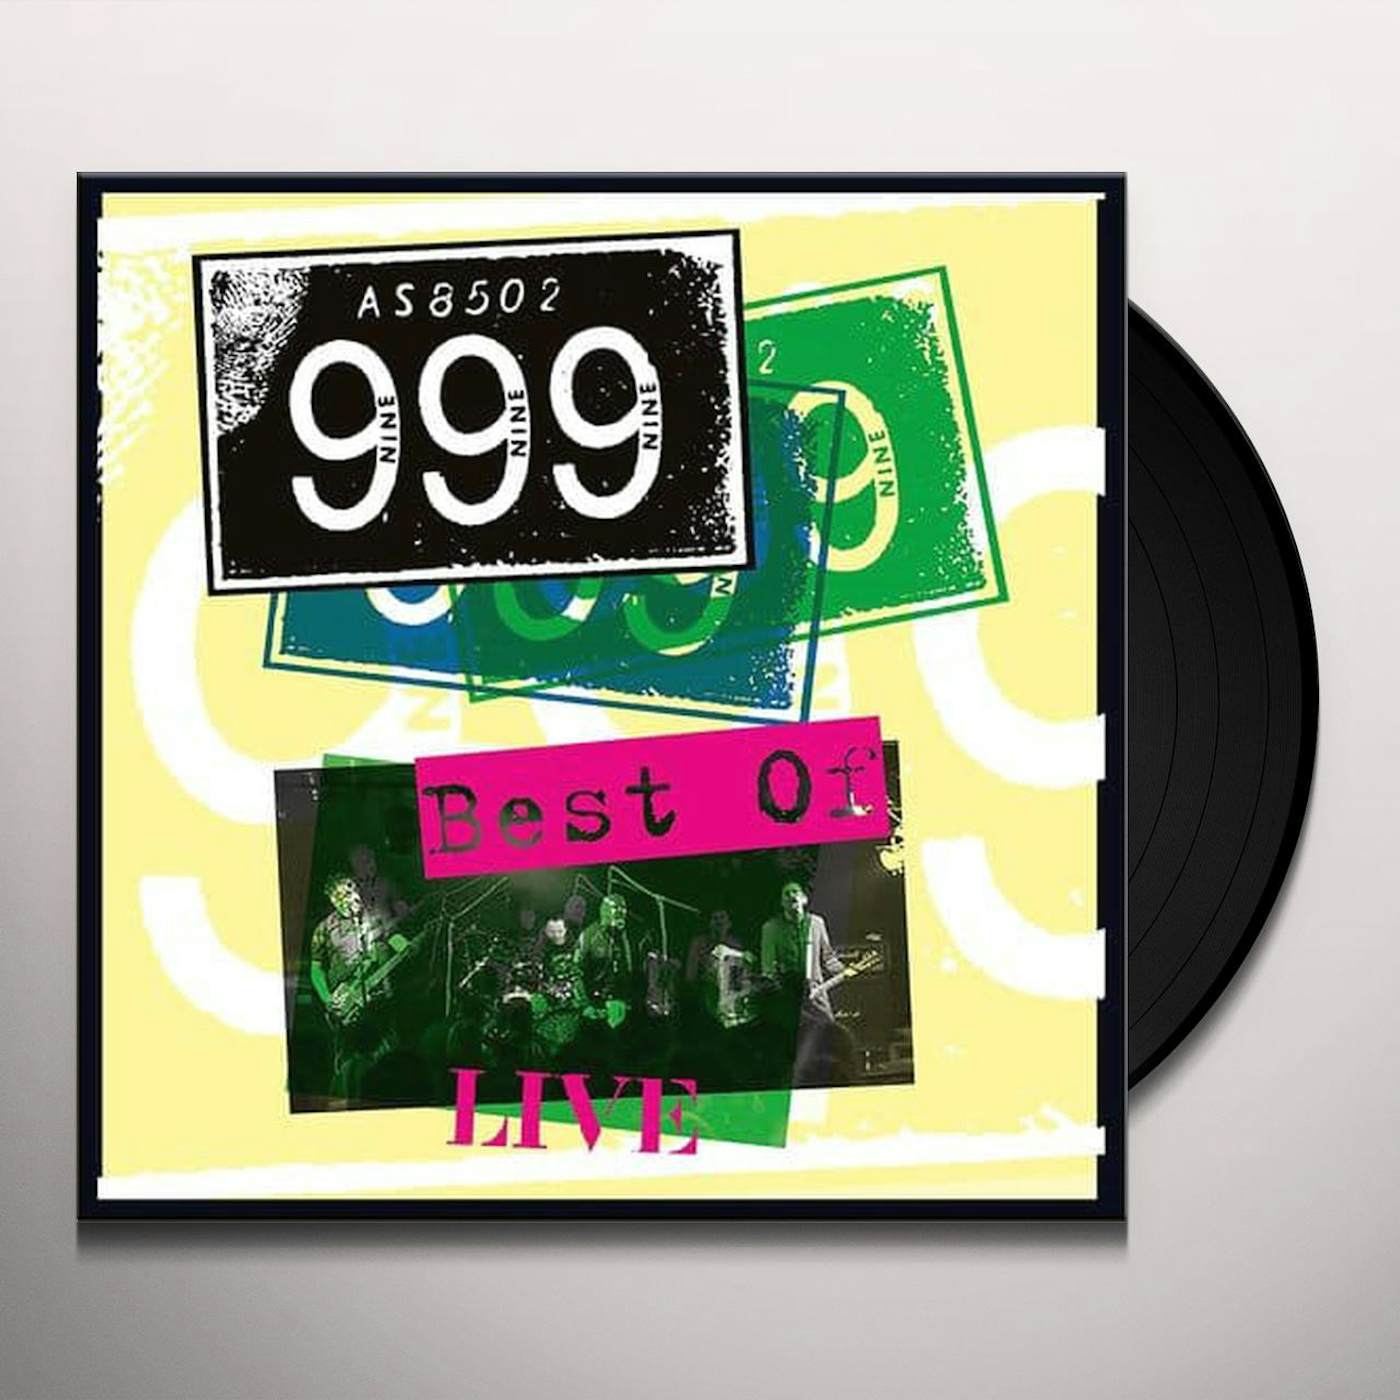 999 Best of Live Vinyl Record